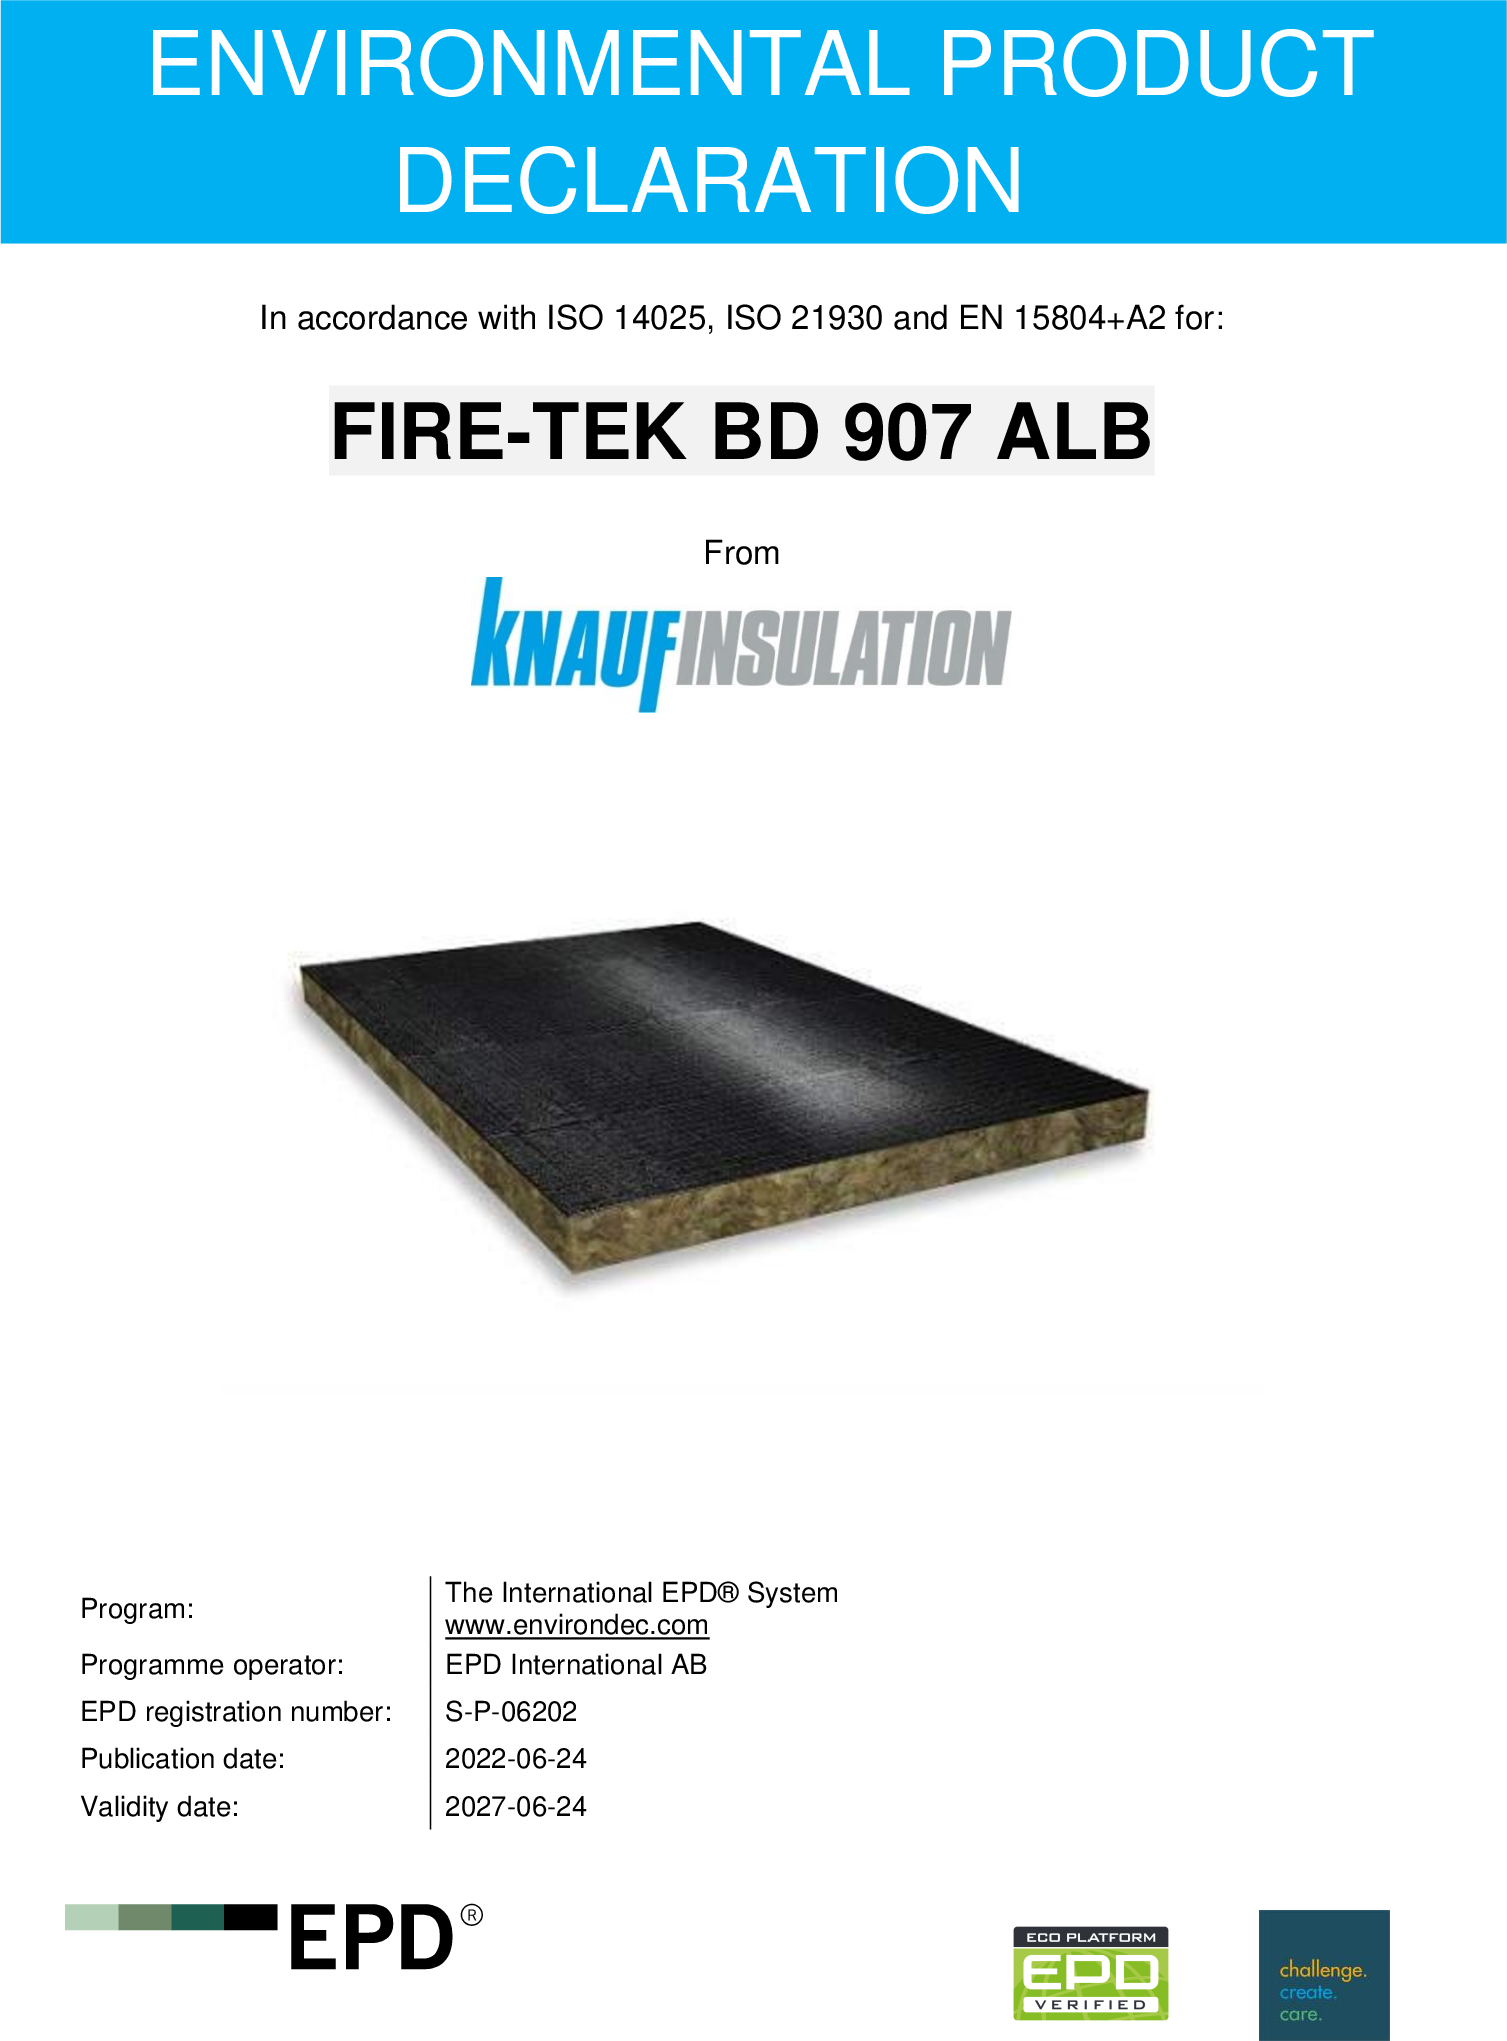 FIRE-TEK BD 907 ALB